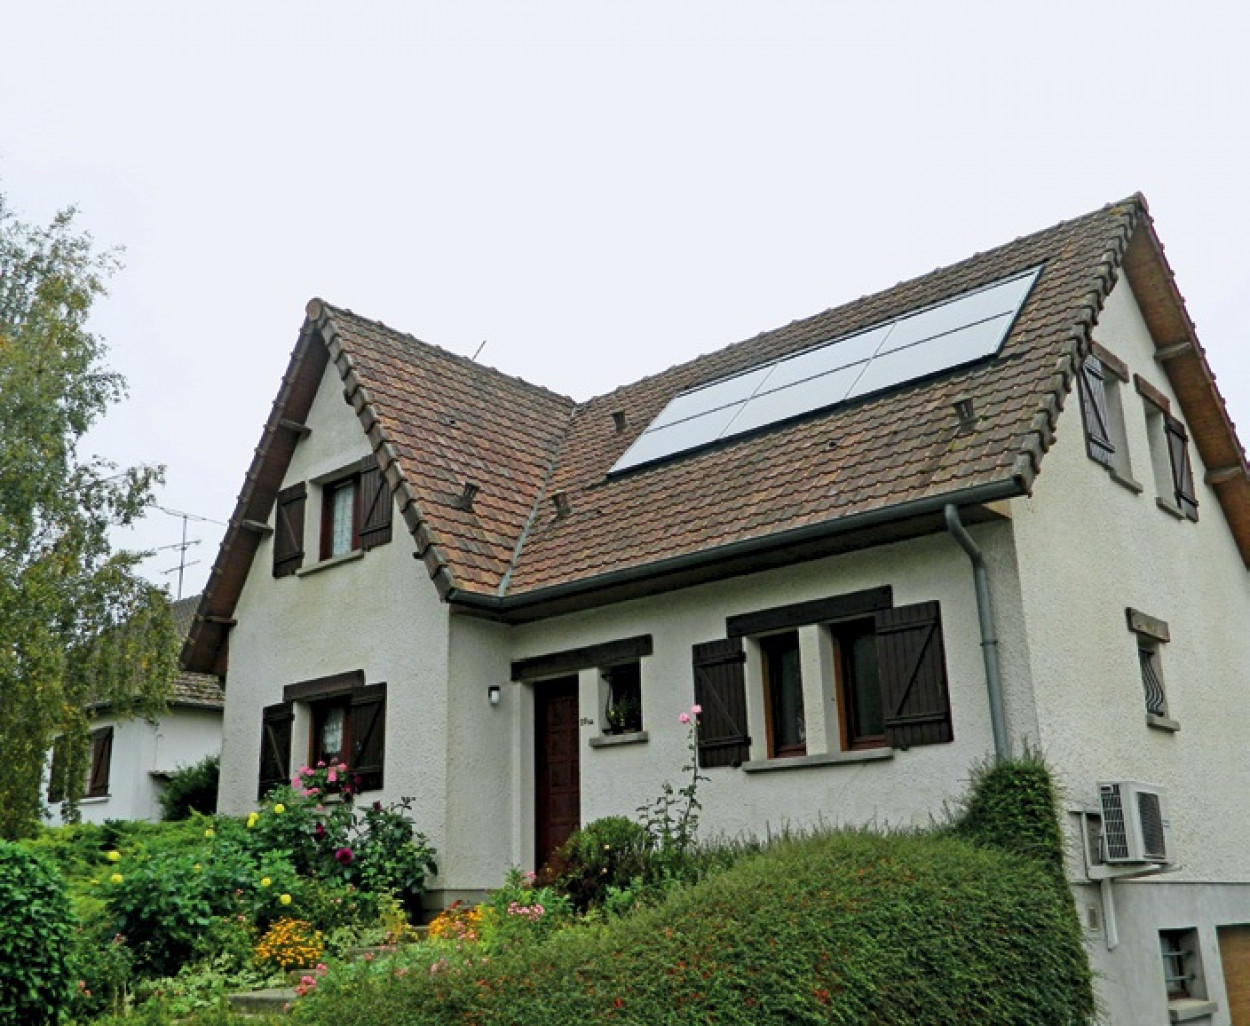 En Picardie, 74% des habitations sont des logements individuels, appartenant à 65% par des propriétaires occupants.